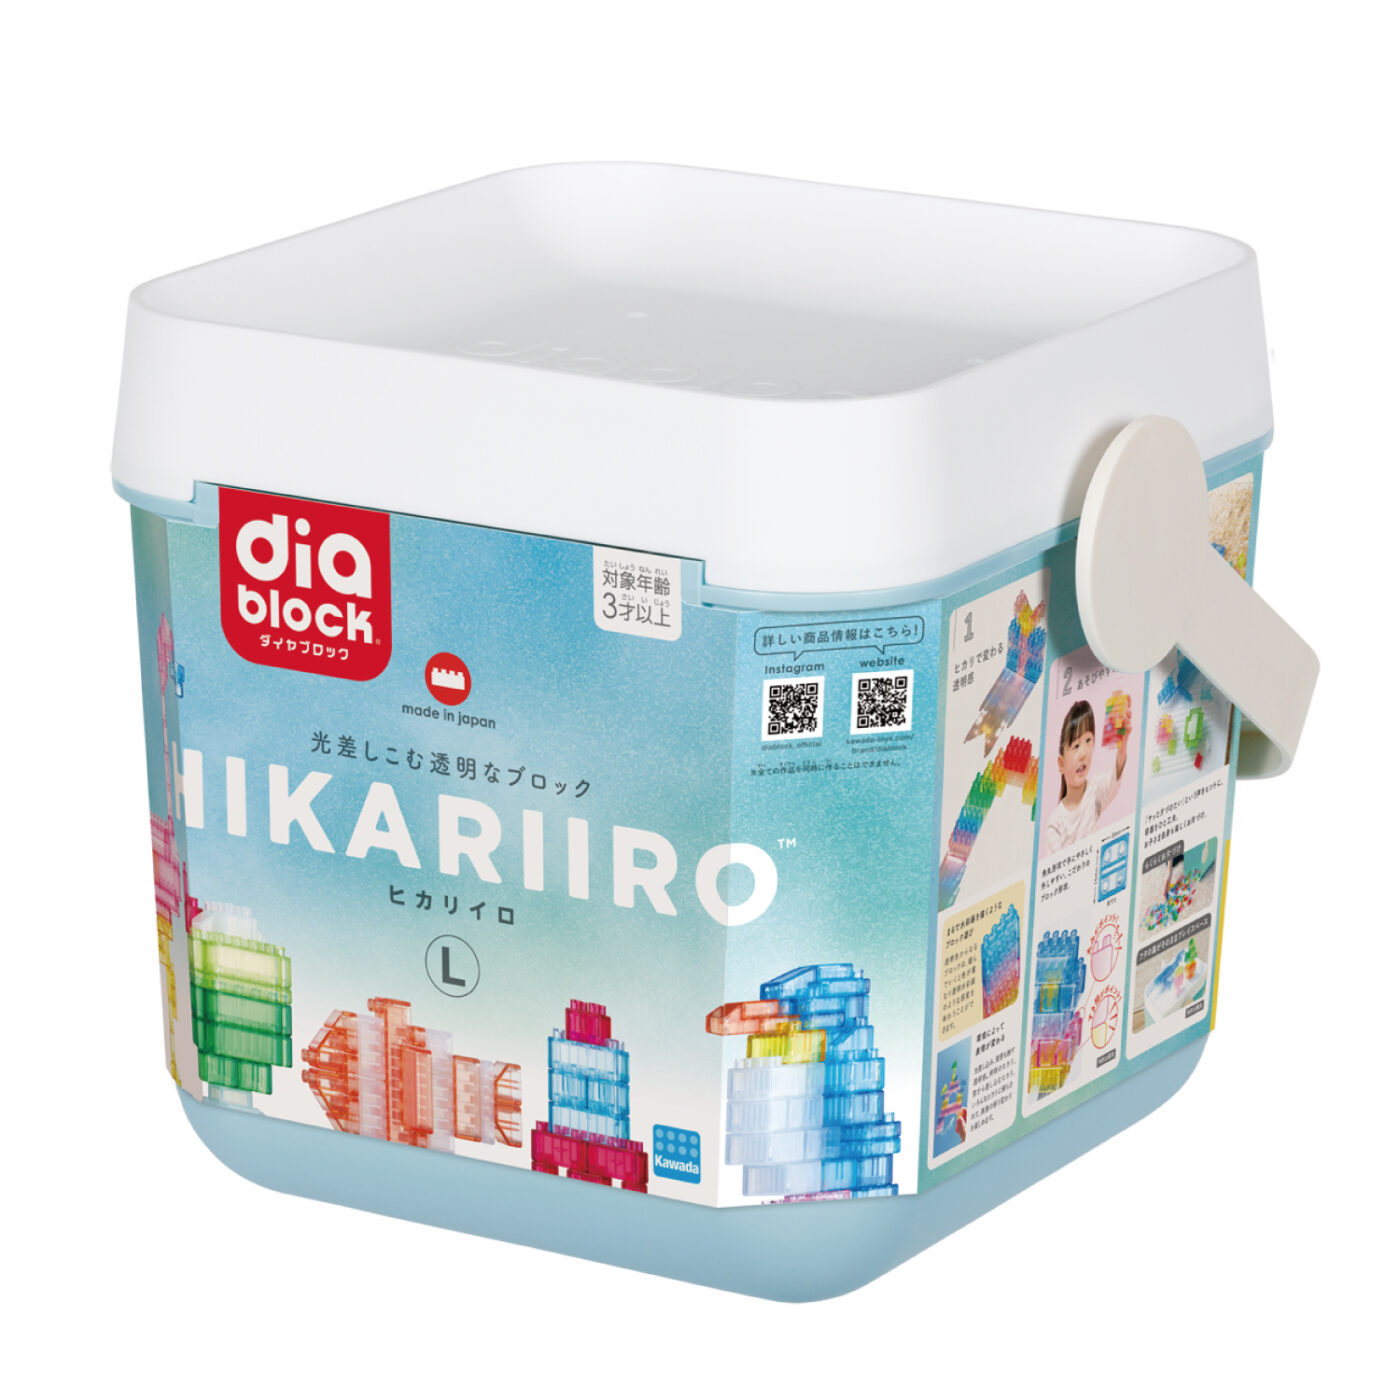 ダイヤブロック HIKARIIRO(ヒカリイロ) Lの商品画像